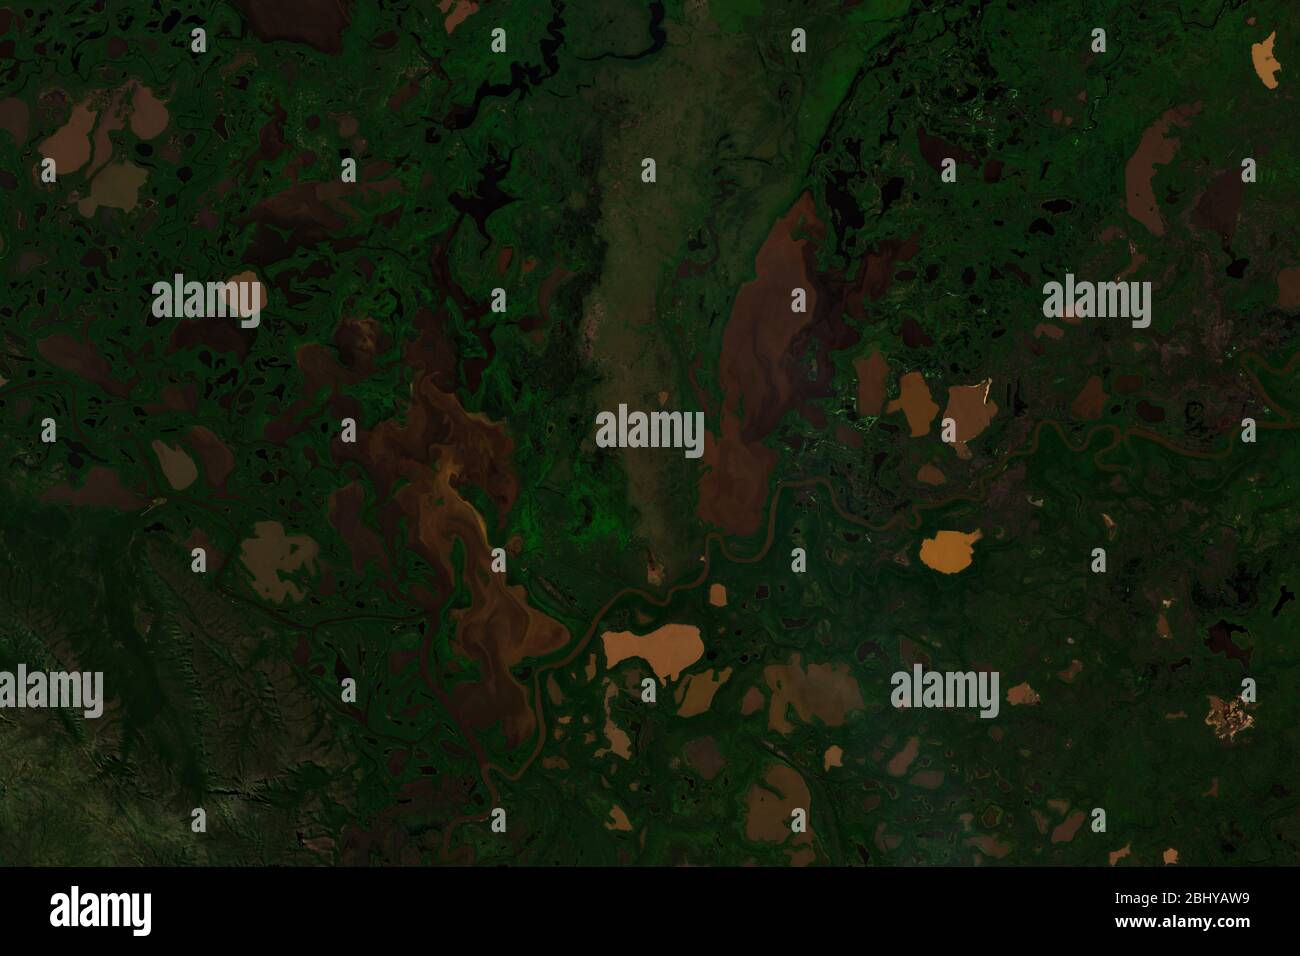 Image satellite haute résolution des zones humides du parc national Pantanal MatogrossSENSE - contient des données sentinelles Copernic modifiées (2020) Banque D'Images